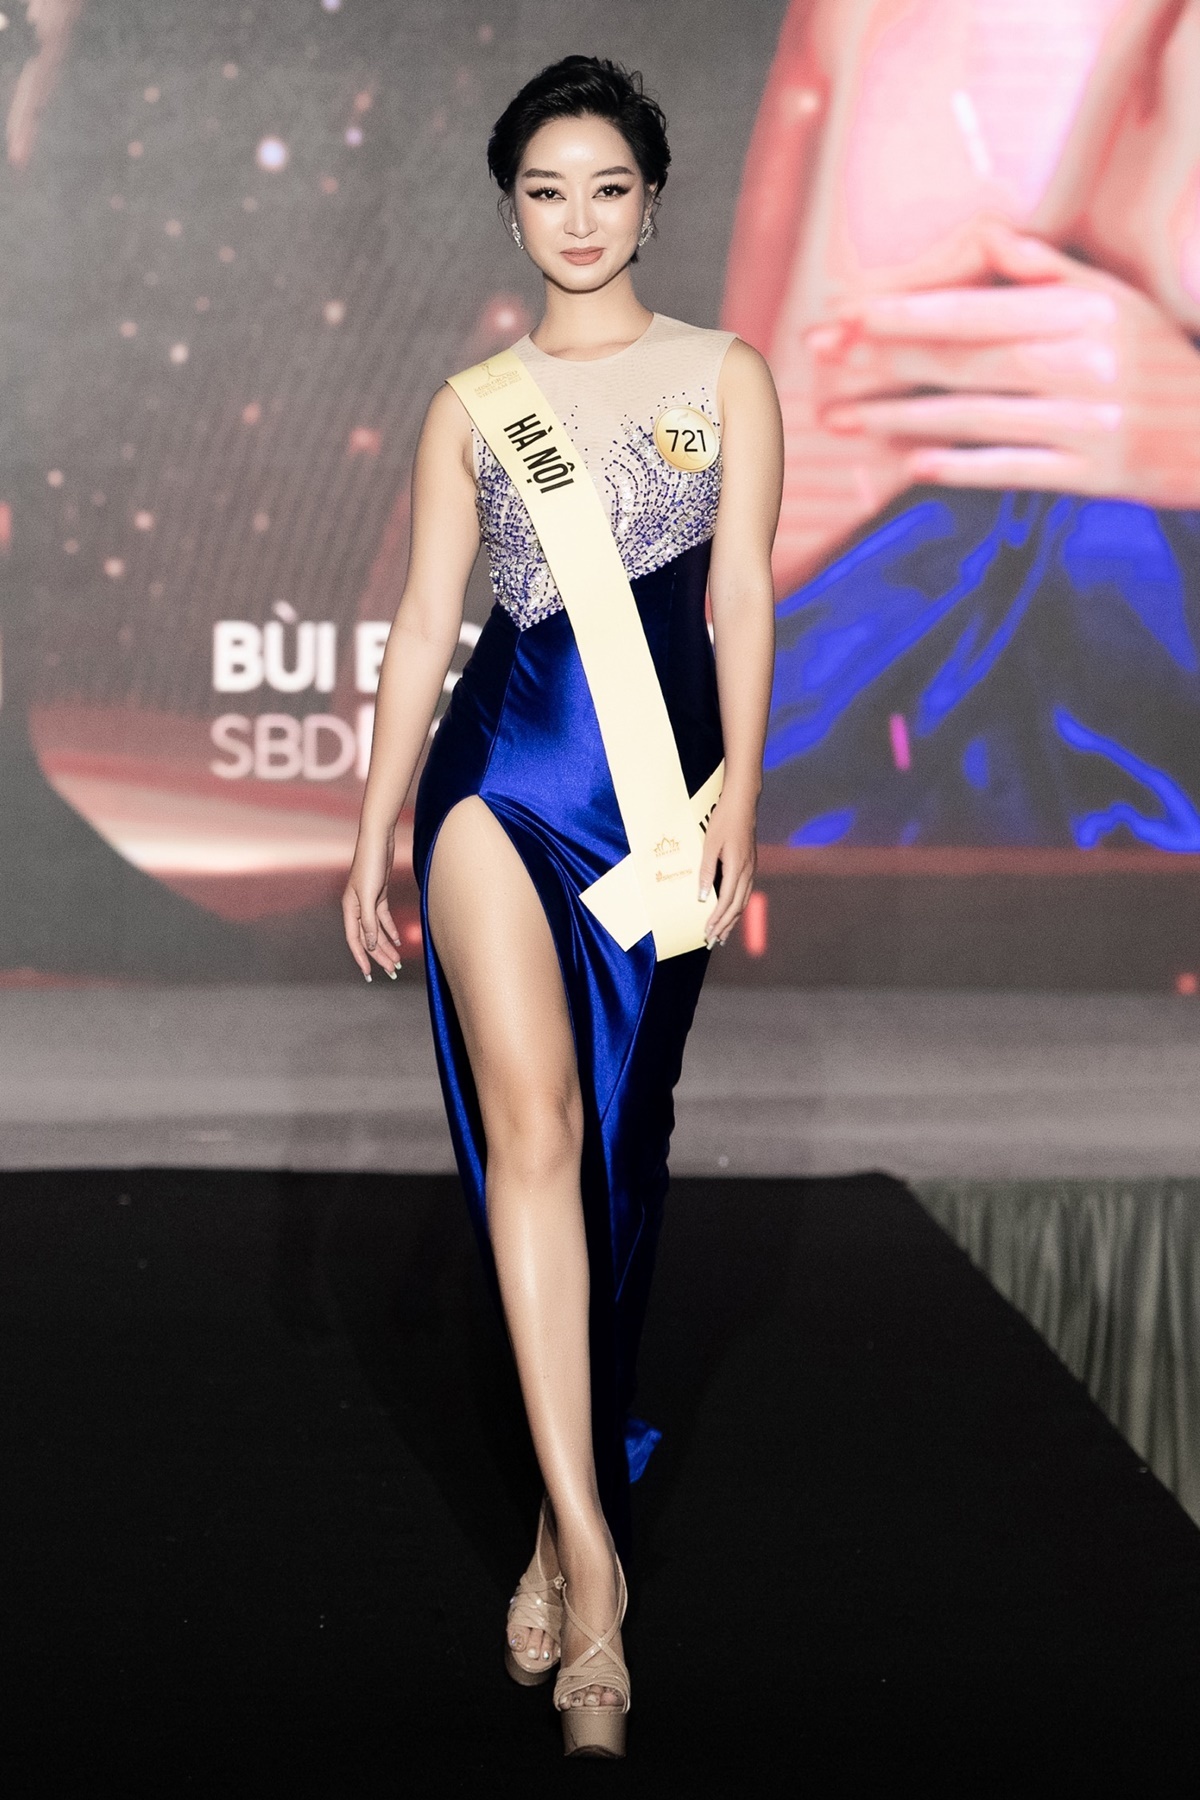 Thí sinh Miss Grand Vietnam gây chú ý khi sở hữu vòng eo con kiến  chỉ 535 cm  